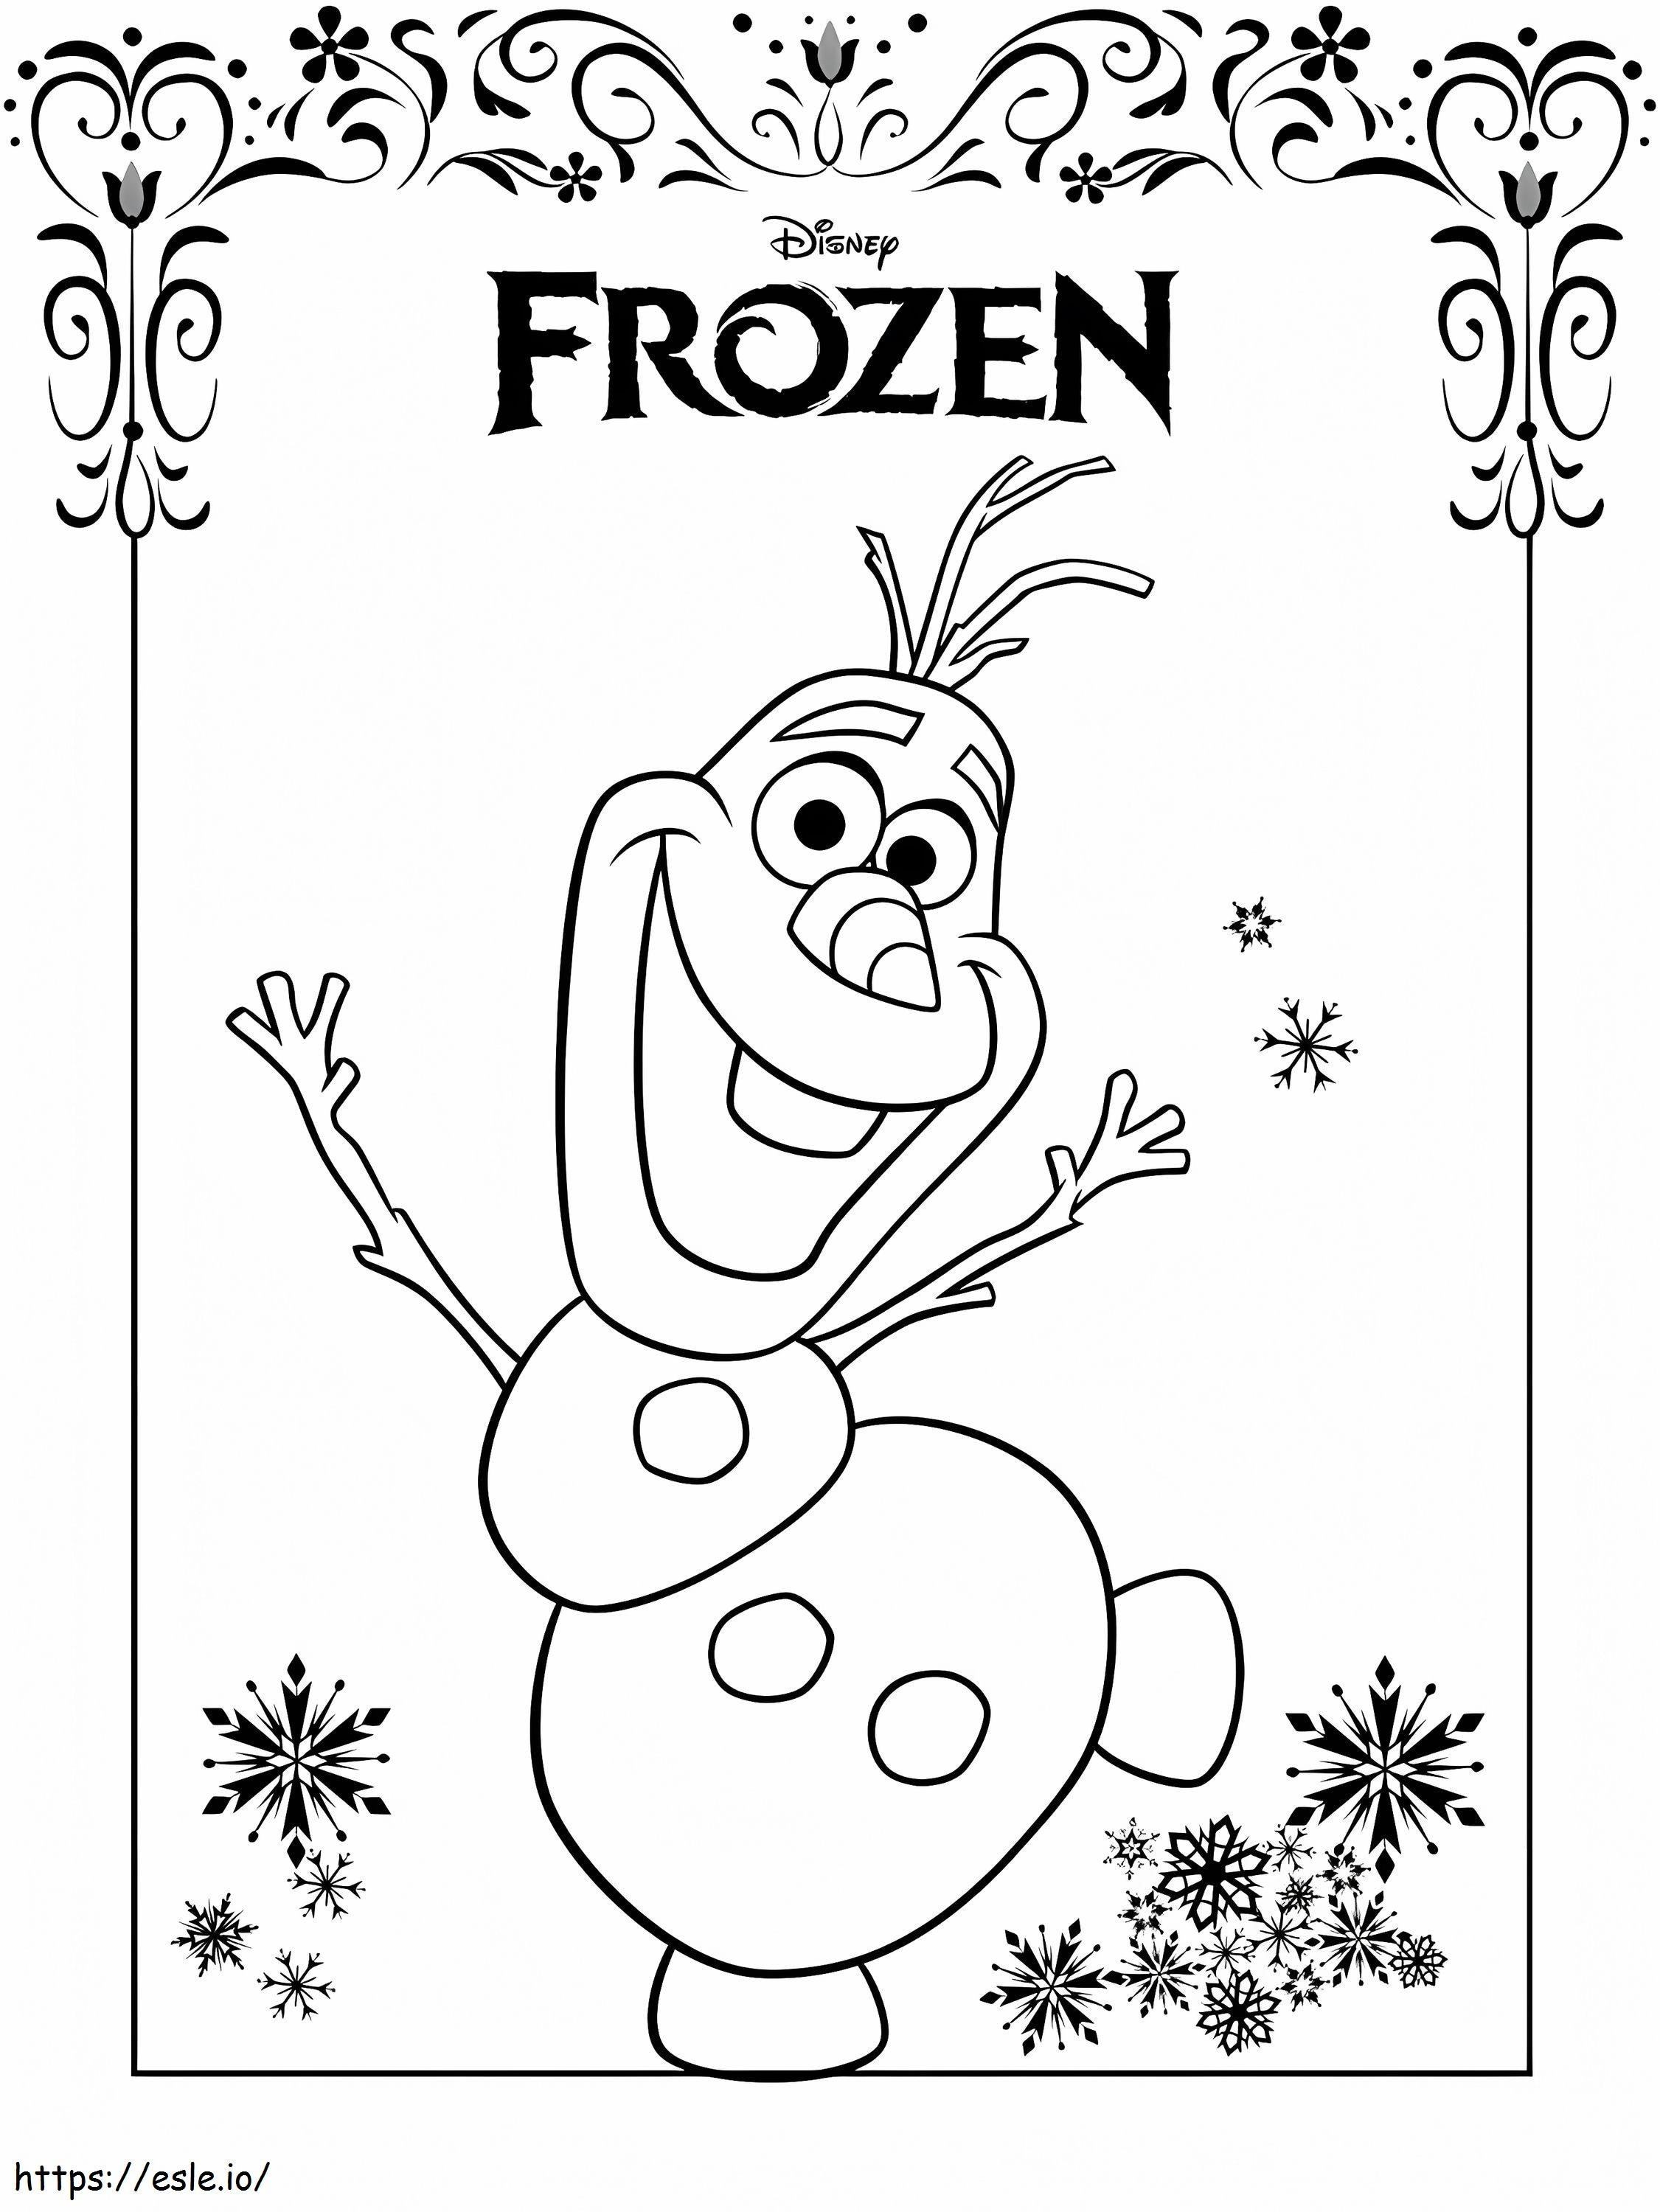 Olaf aus Frozen ausmalbilder